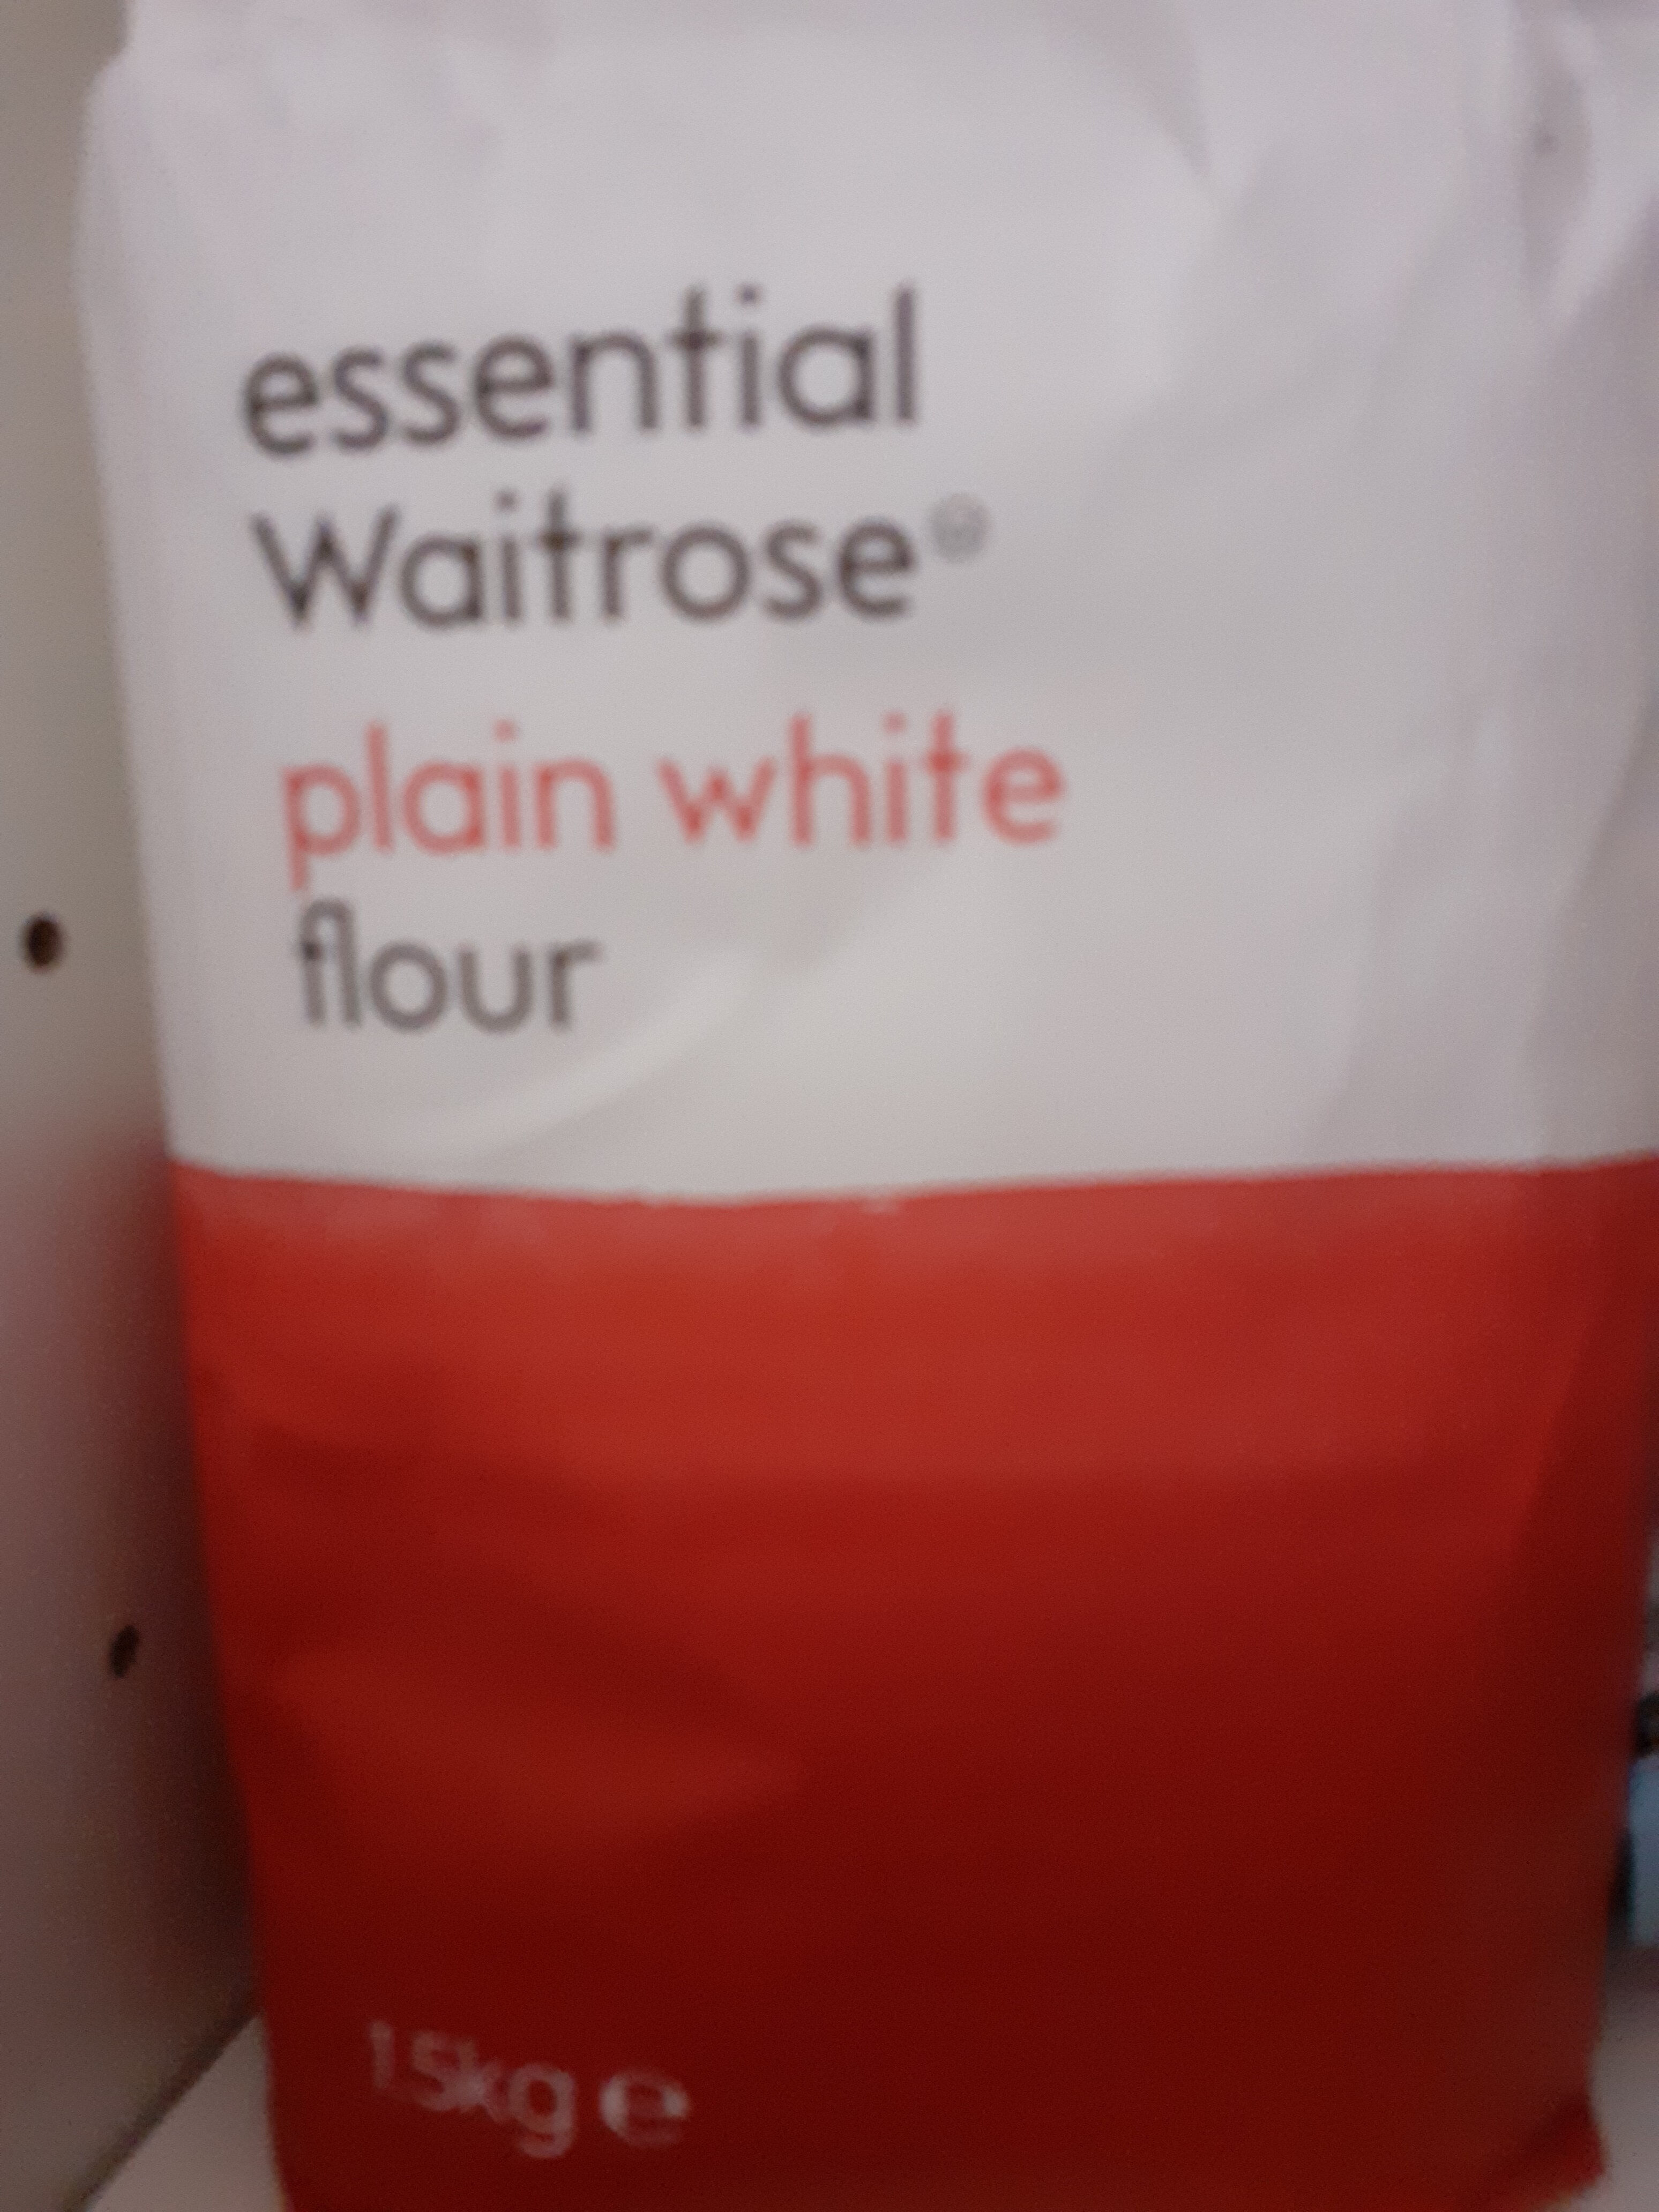 Essential waitrose plain white flour - Produit